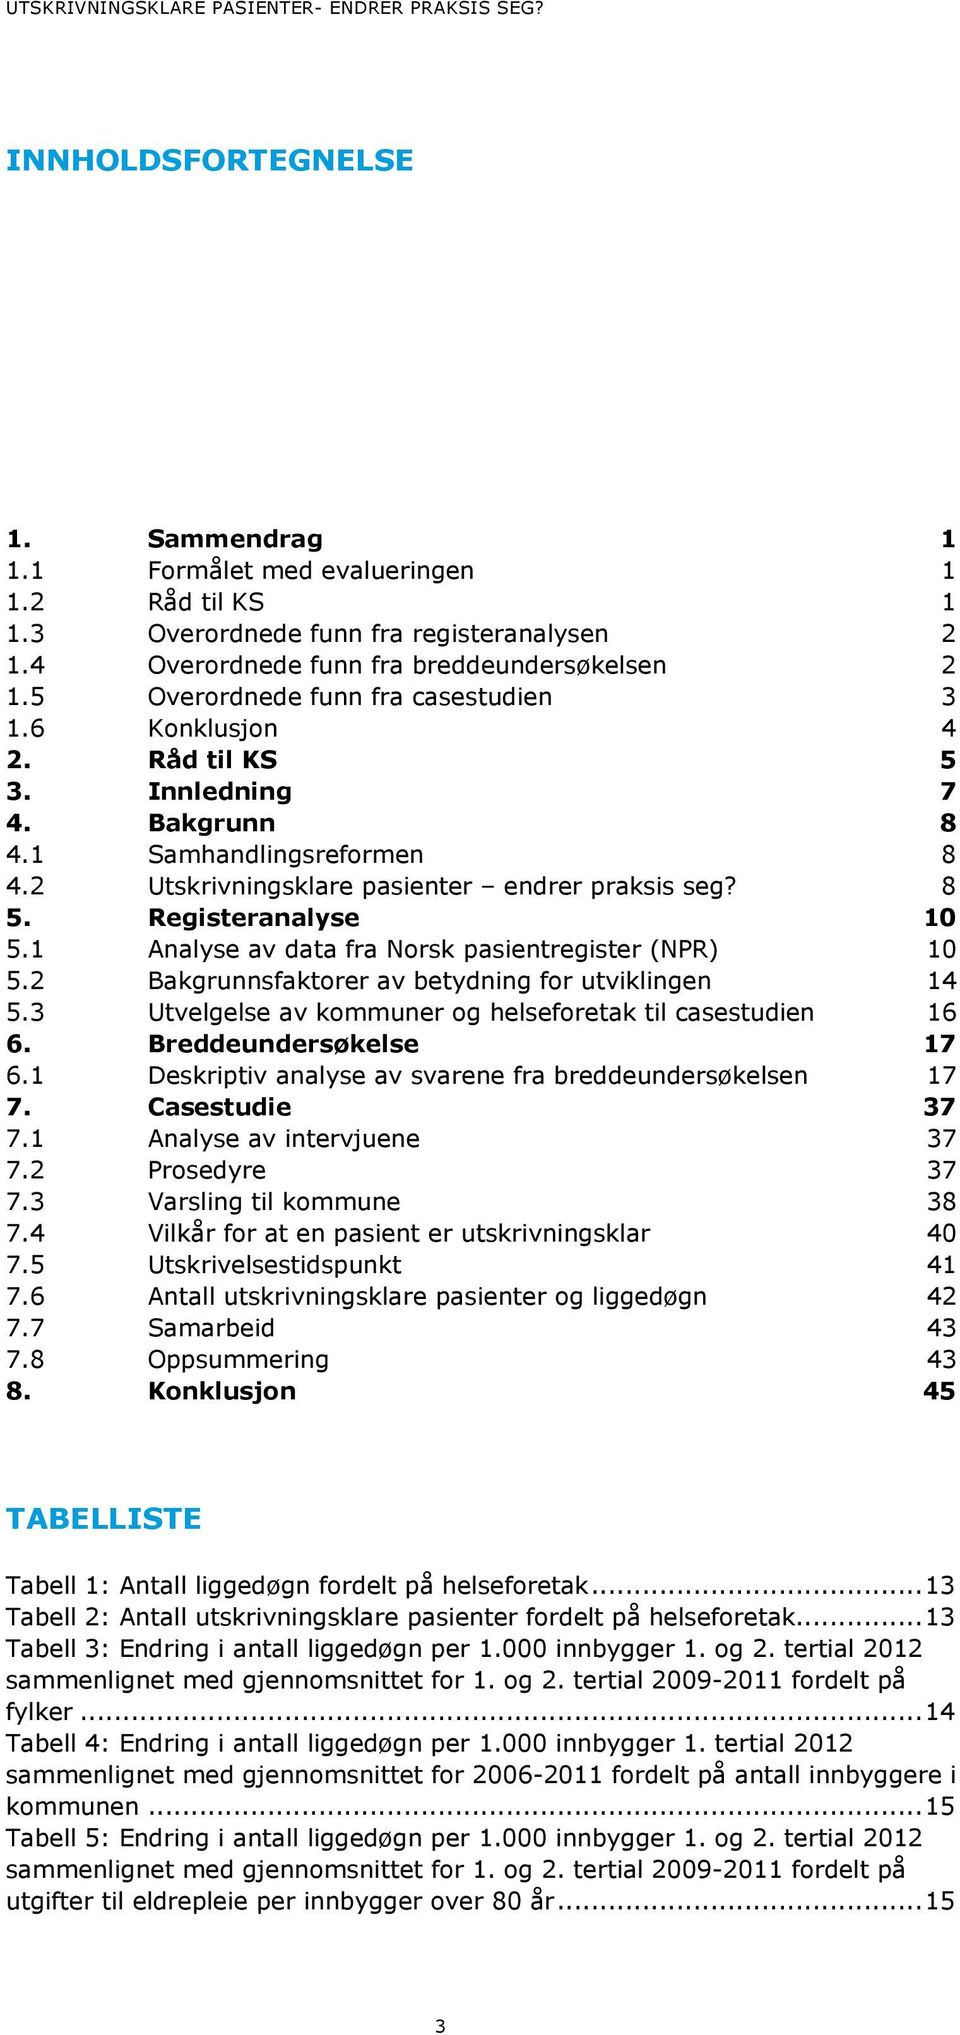 2 Utskrivningsklare pasienter endrer praksis seg? 8 5. Registeranalyse 10 5.1 Analyse av data fra Norsk pasientregister (NPR) 10 5.2 Bakgrunnsfaktorer av betydning for utviklingen 14 5.